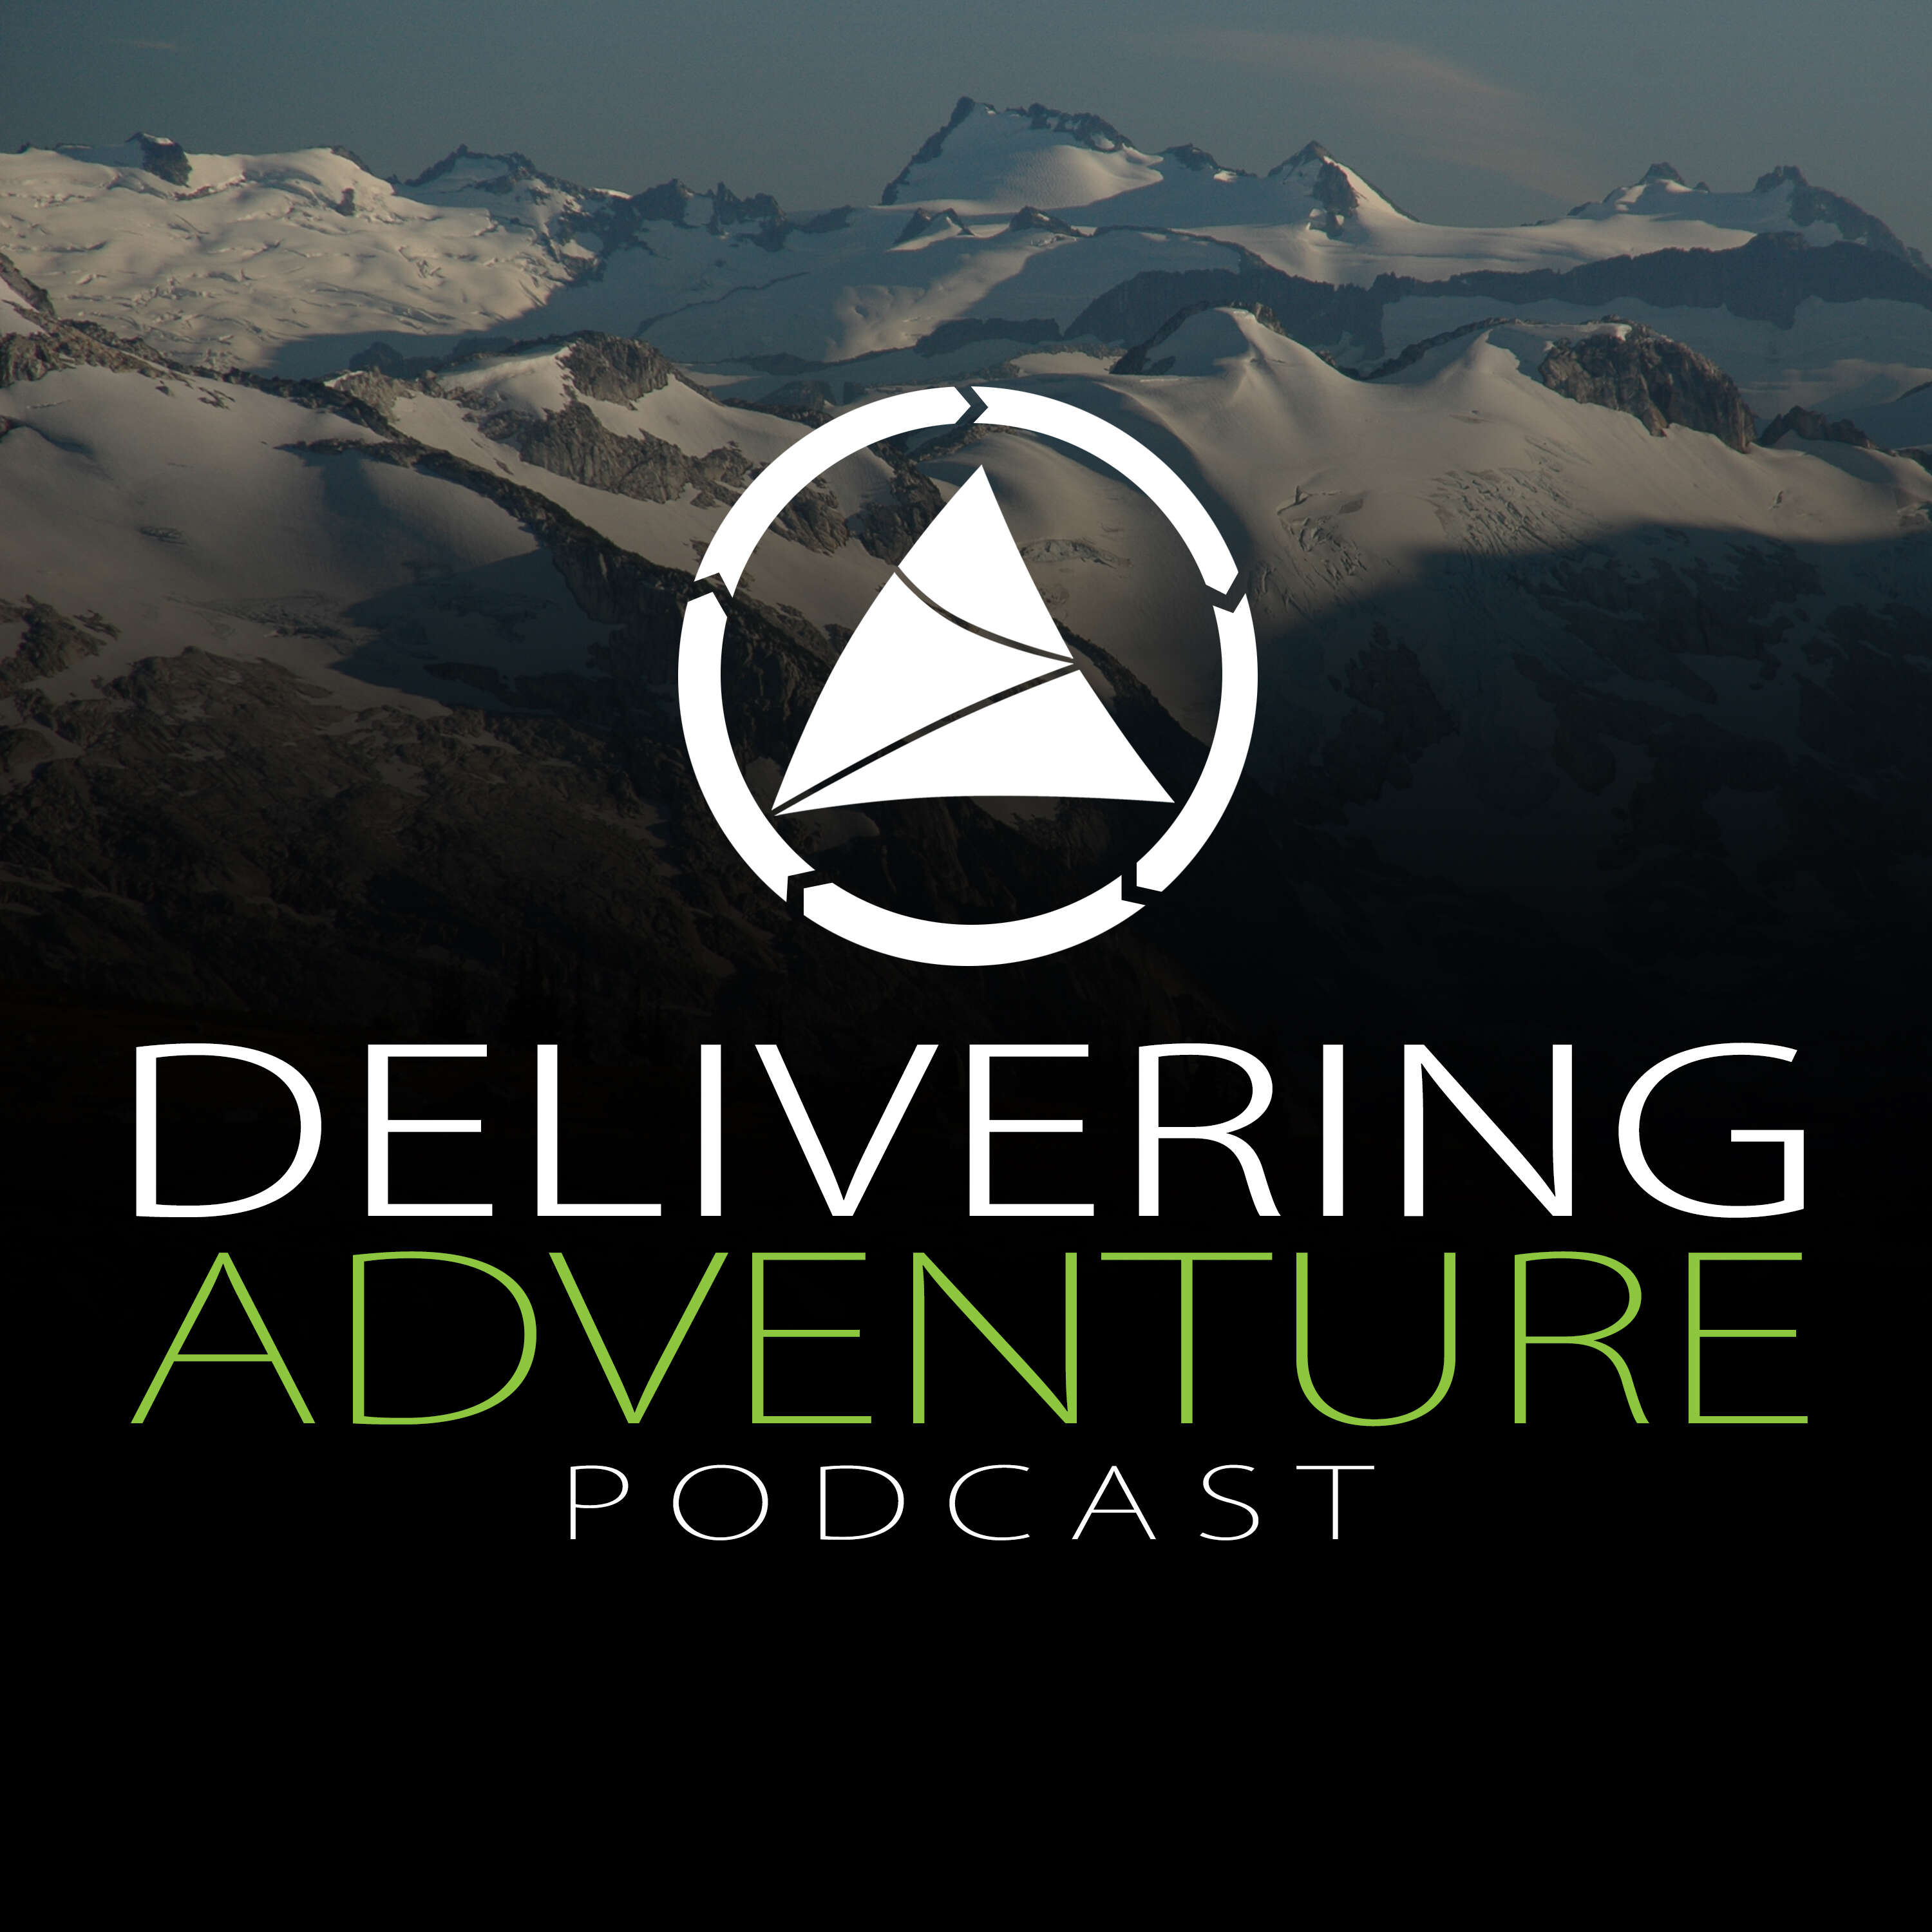 Artwork for podcast Delivering Adventure